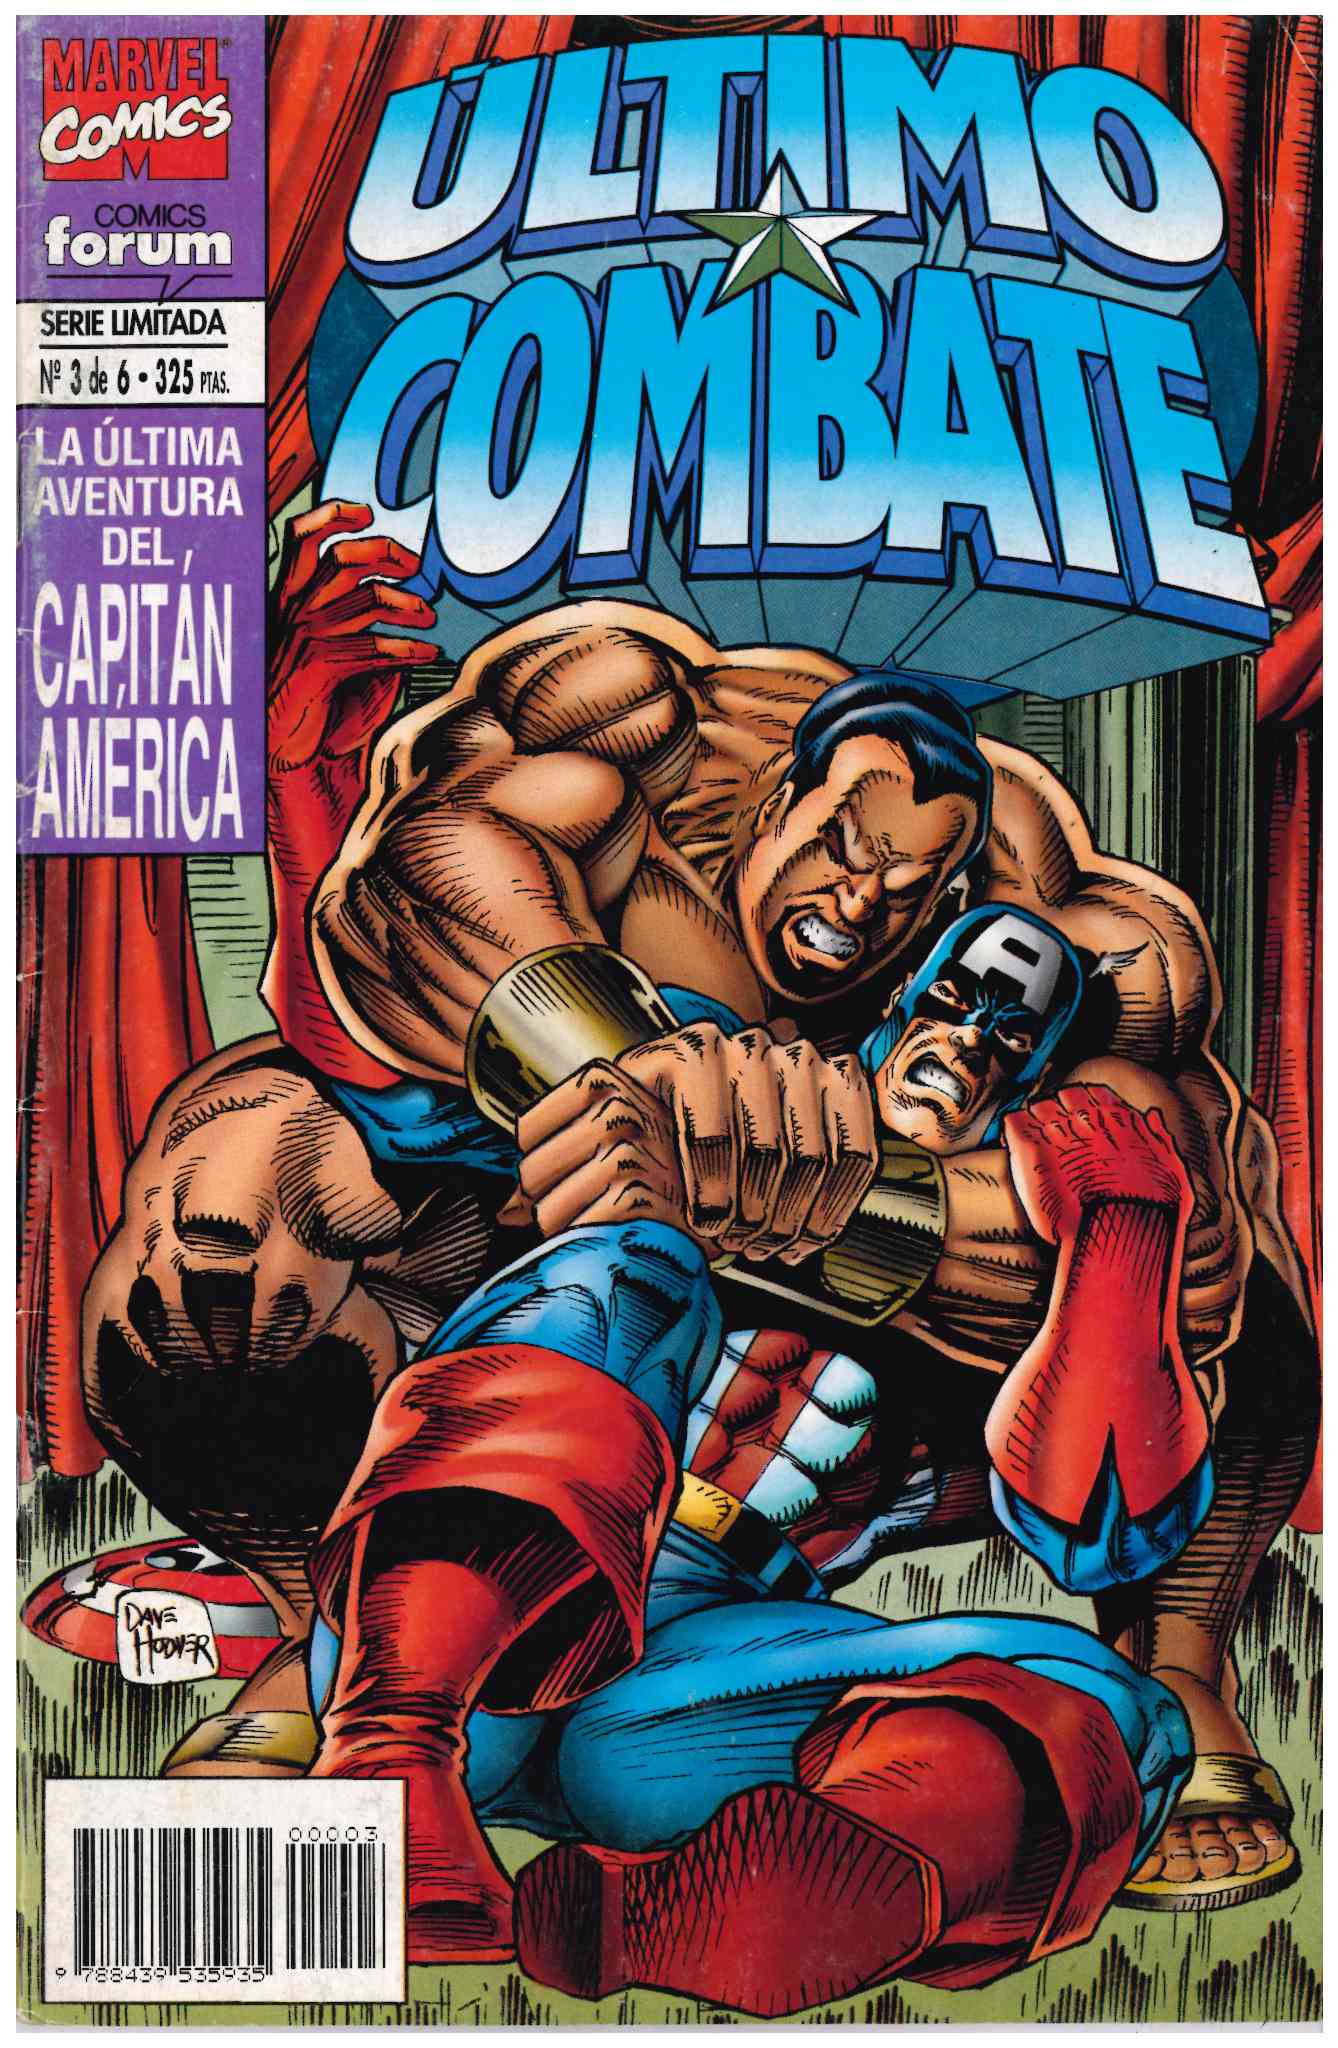 Capitán América. Último Combate. Forum 1995. Nº 3